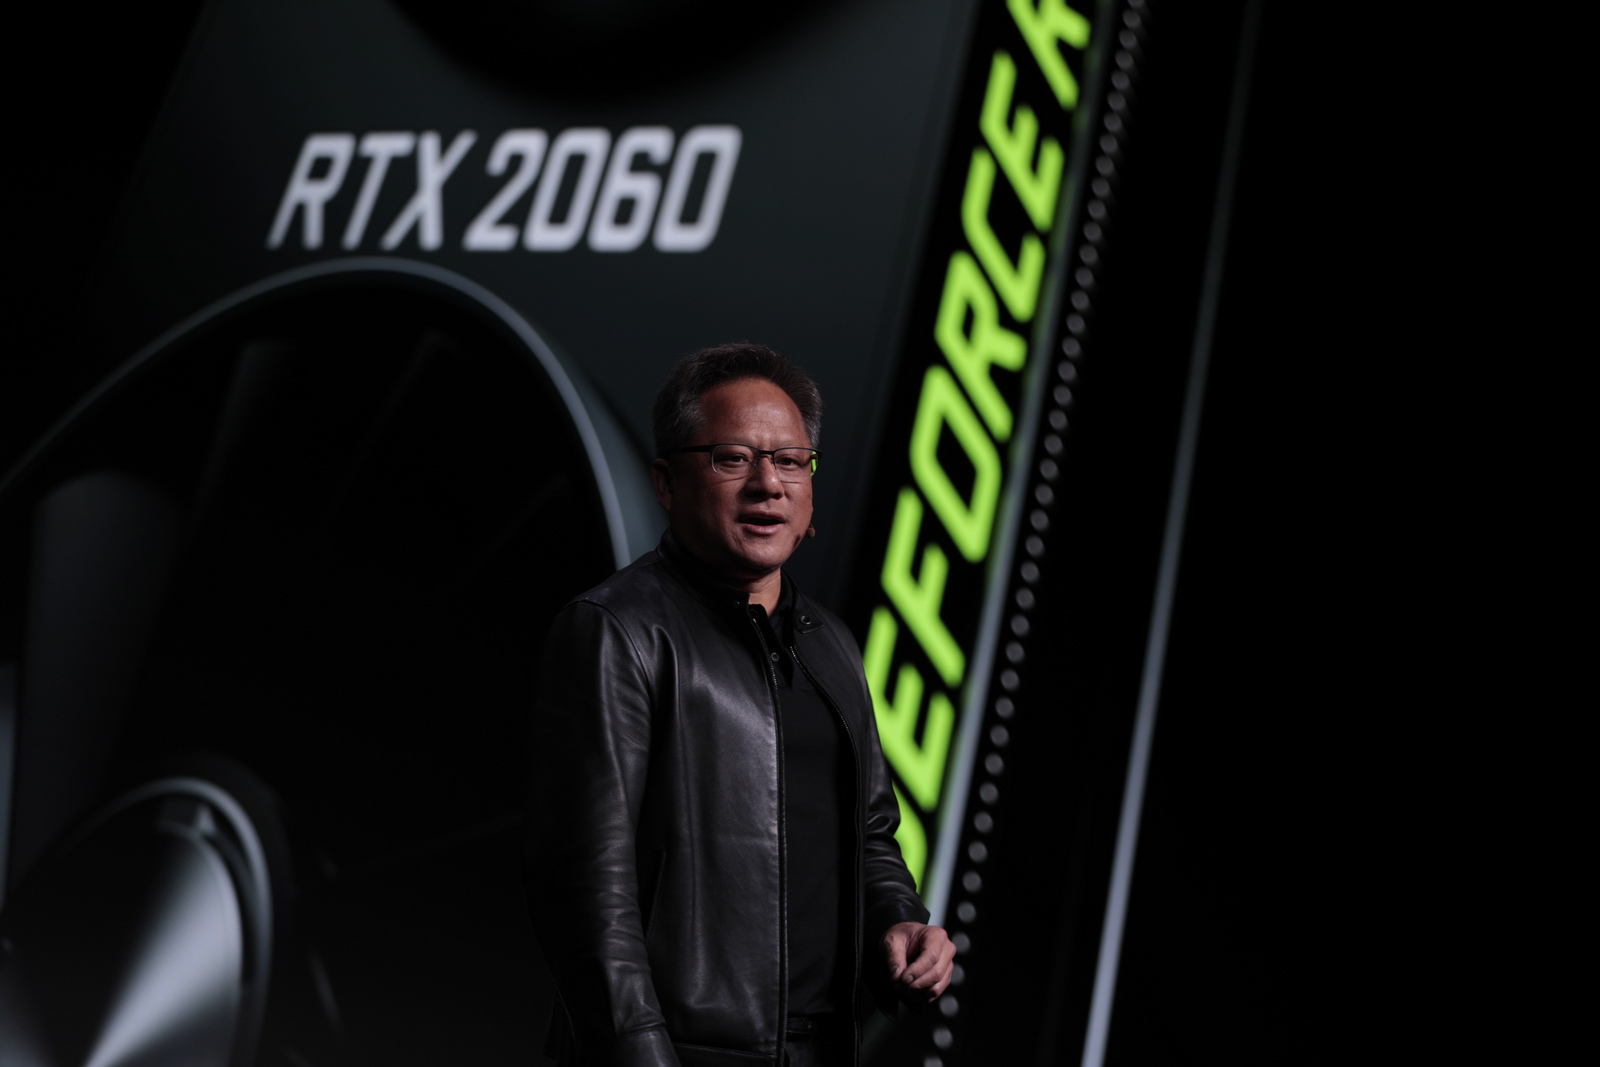 NVIDIA saca chapa y trollea a la competencia: “GeForce RTX 2080 es más potente que las GPU de las próximas consolas”